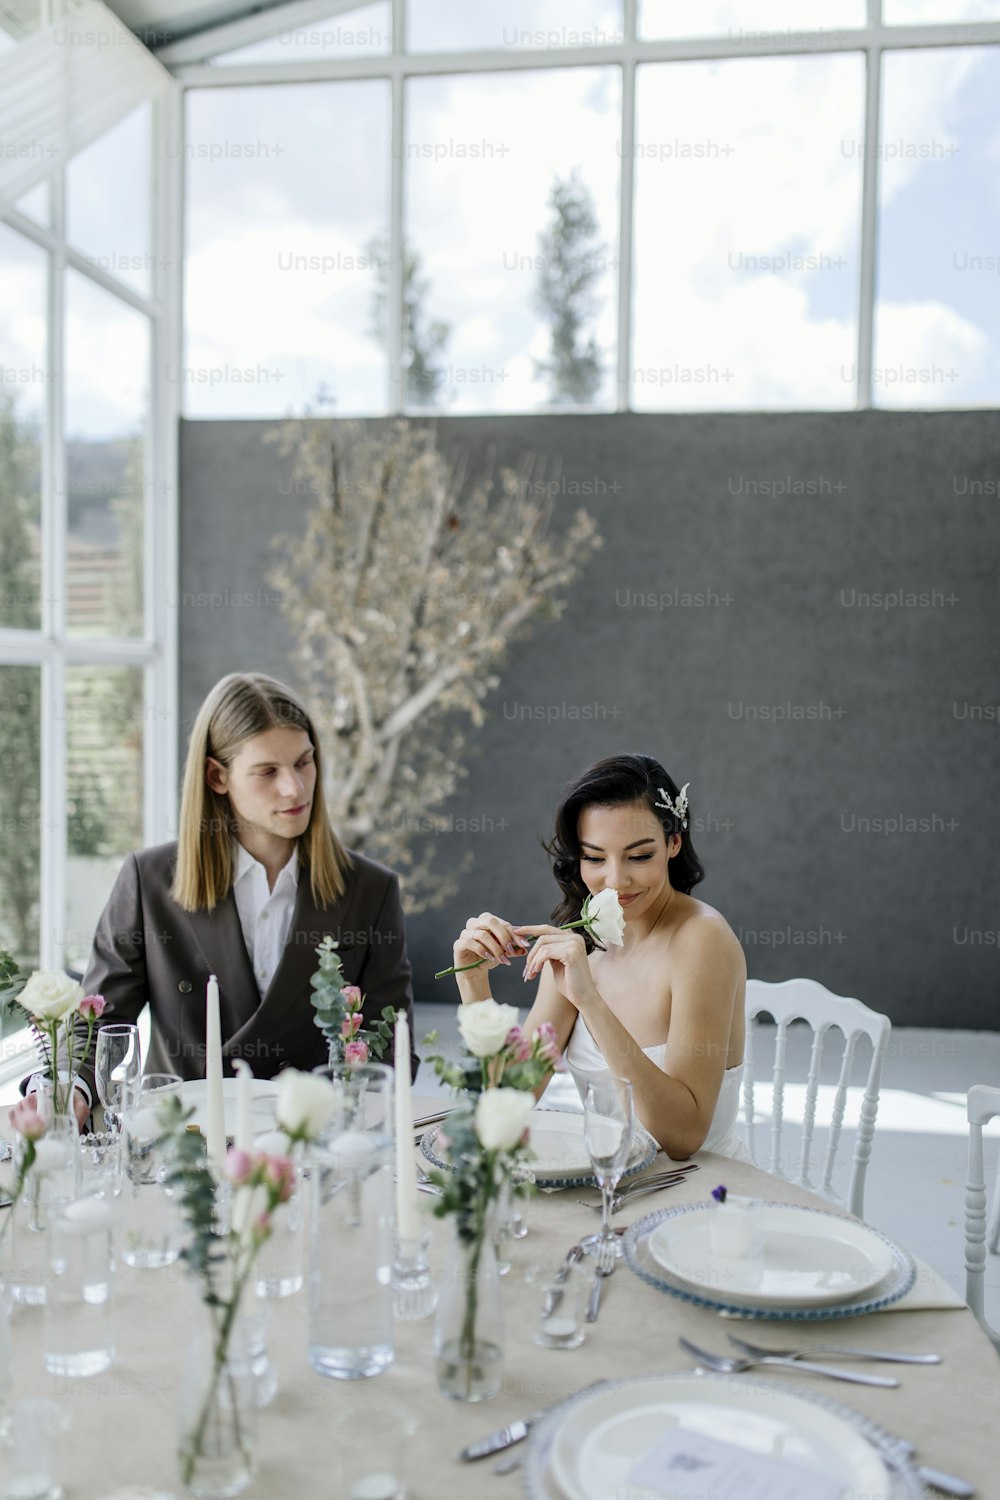 꽃병에 꽃이 꽂힌 테이블에 앉아 있는 두 여자